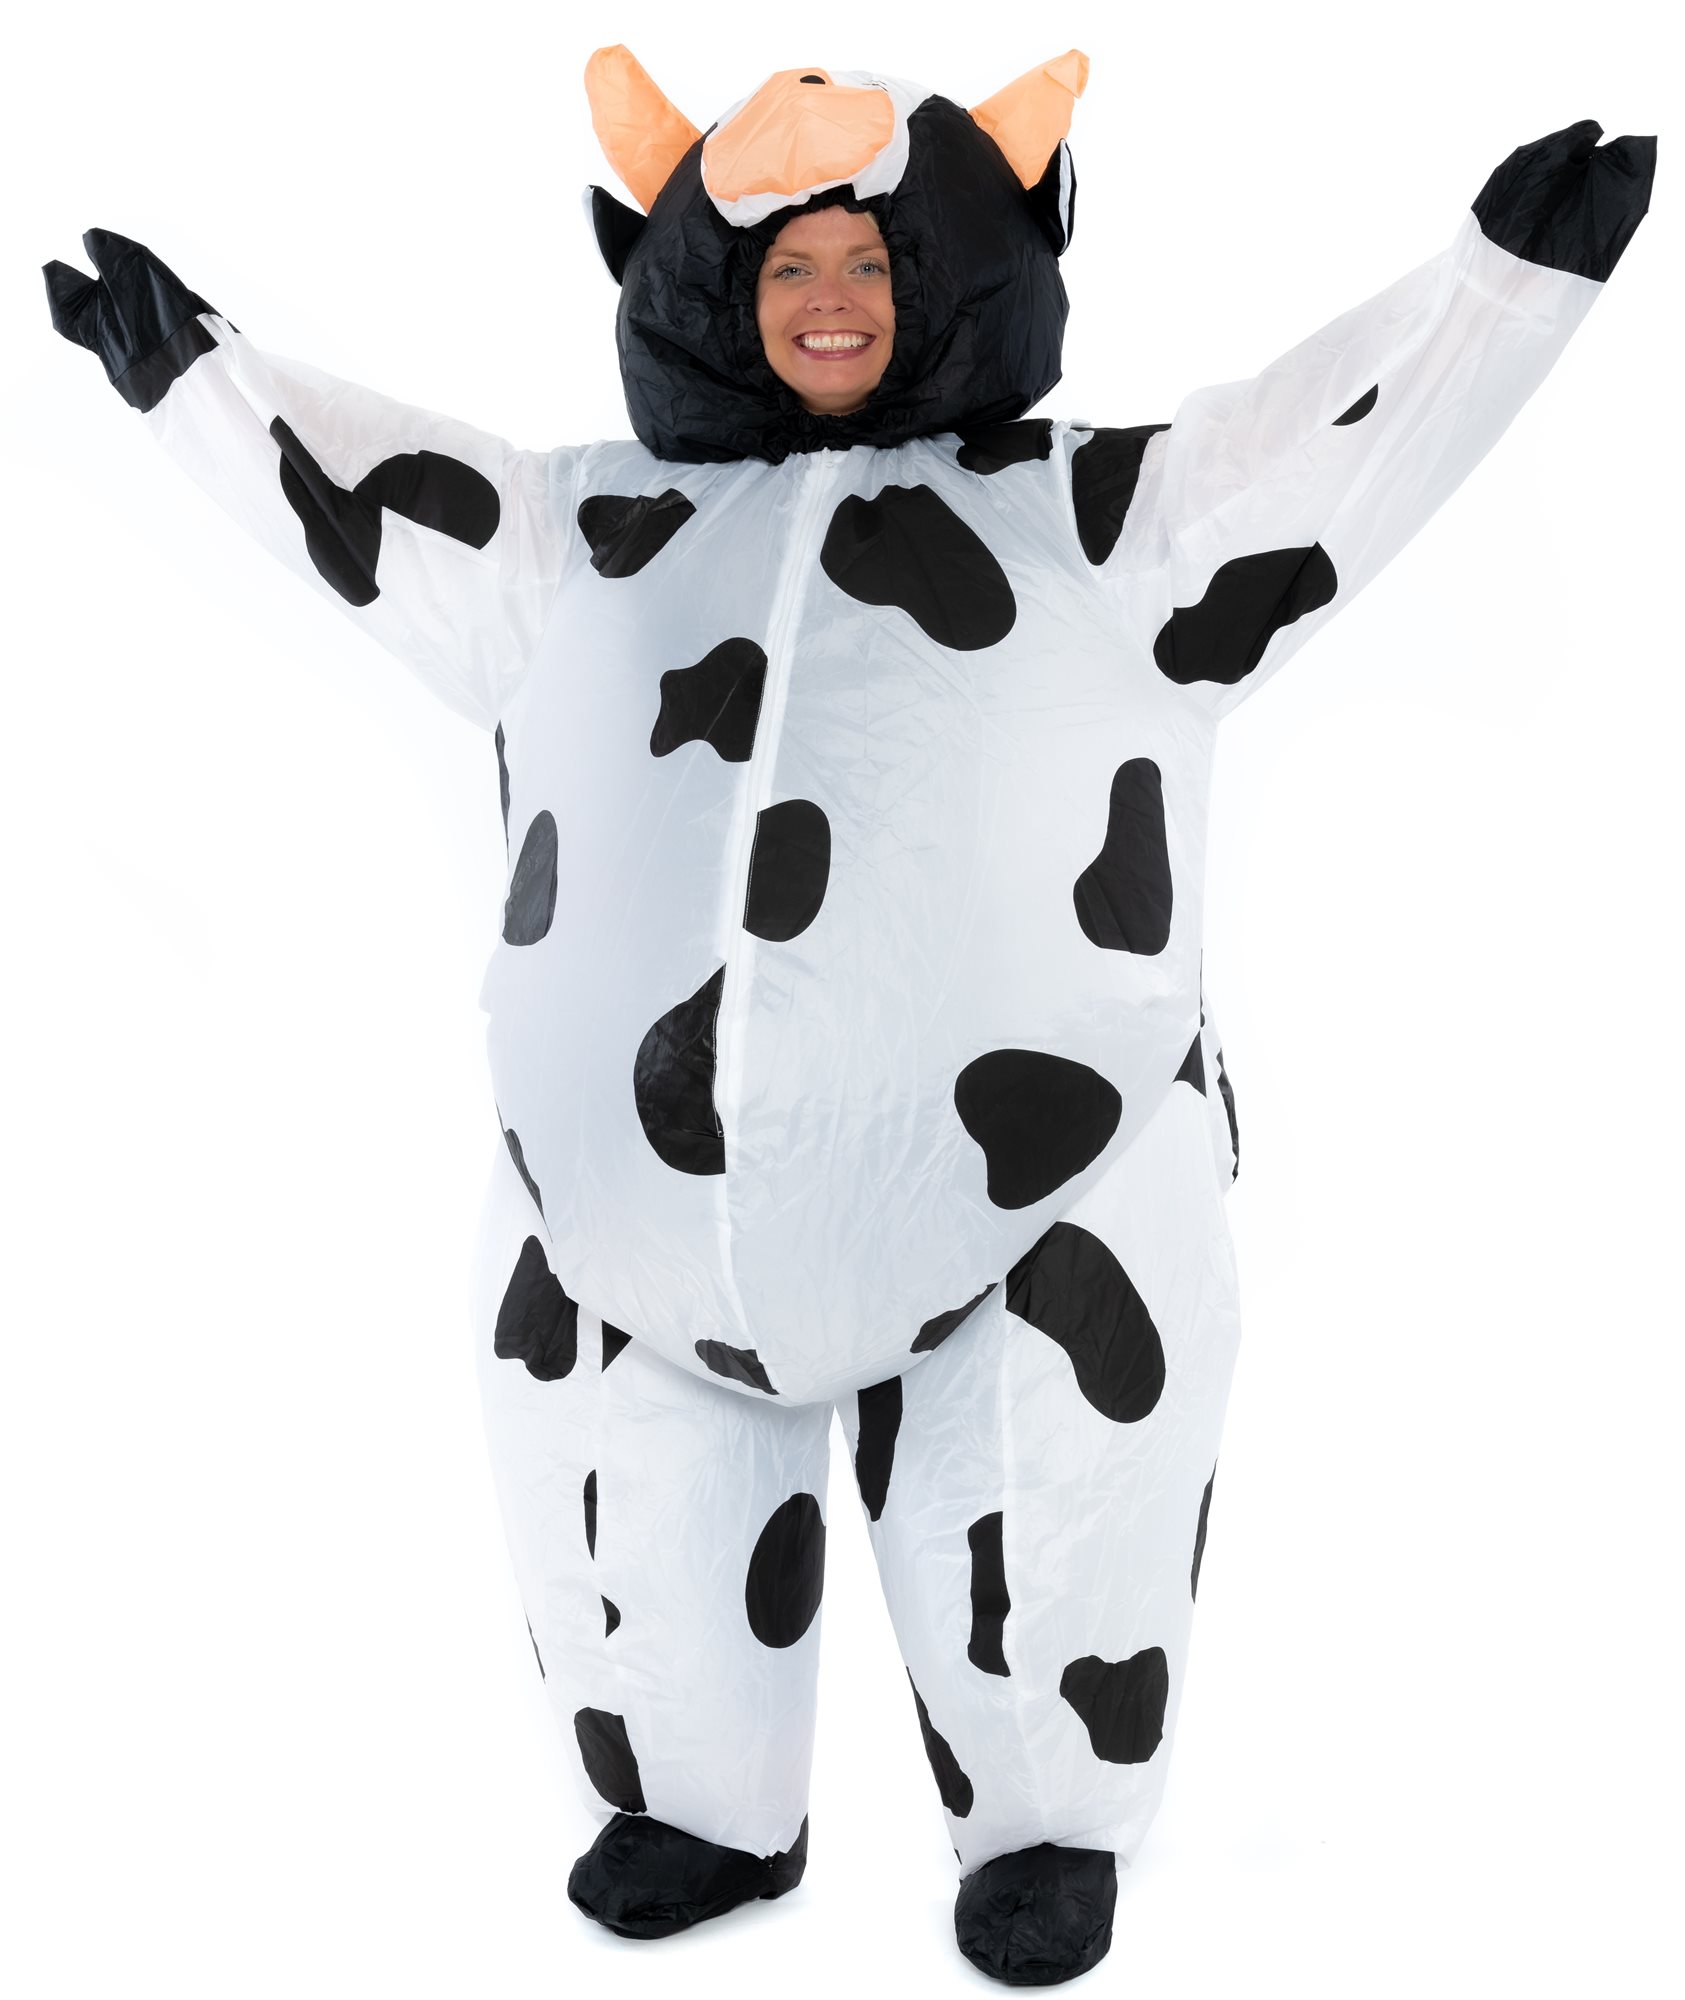 Felfújható jelmez felnőtteknek - Milk Cow